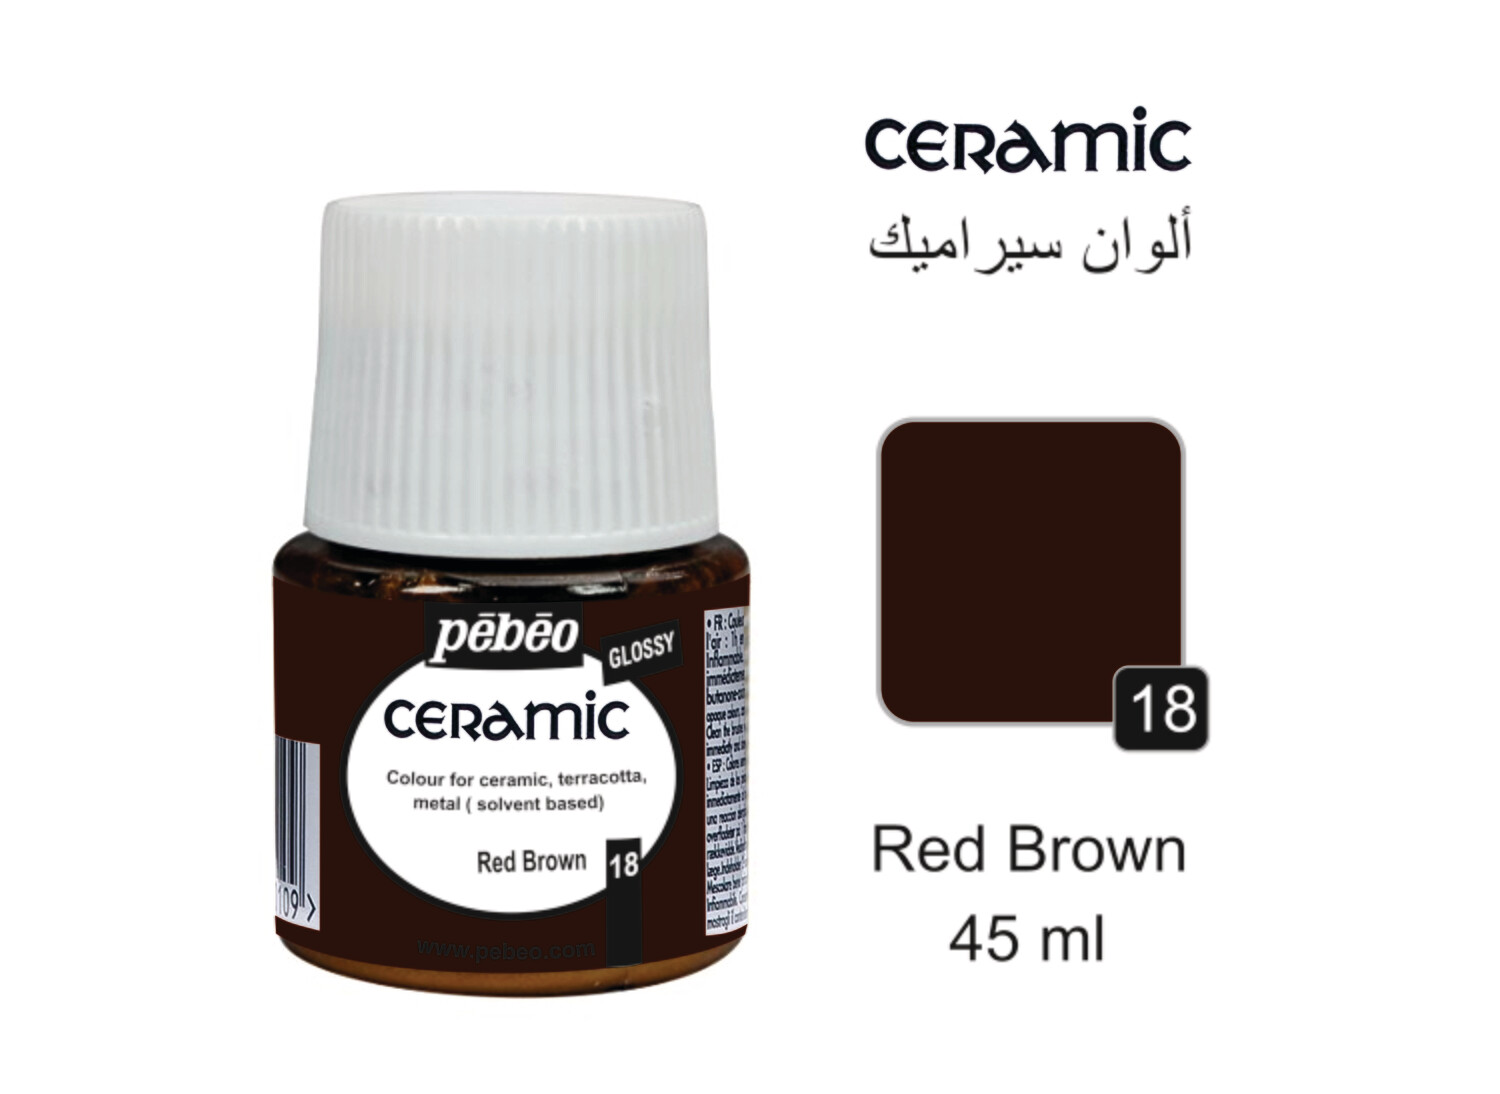 Ceramic colors Red brown, 45 ml No. 18